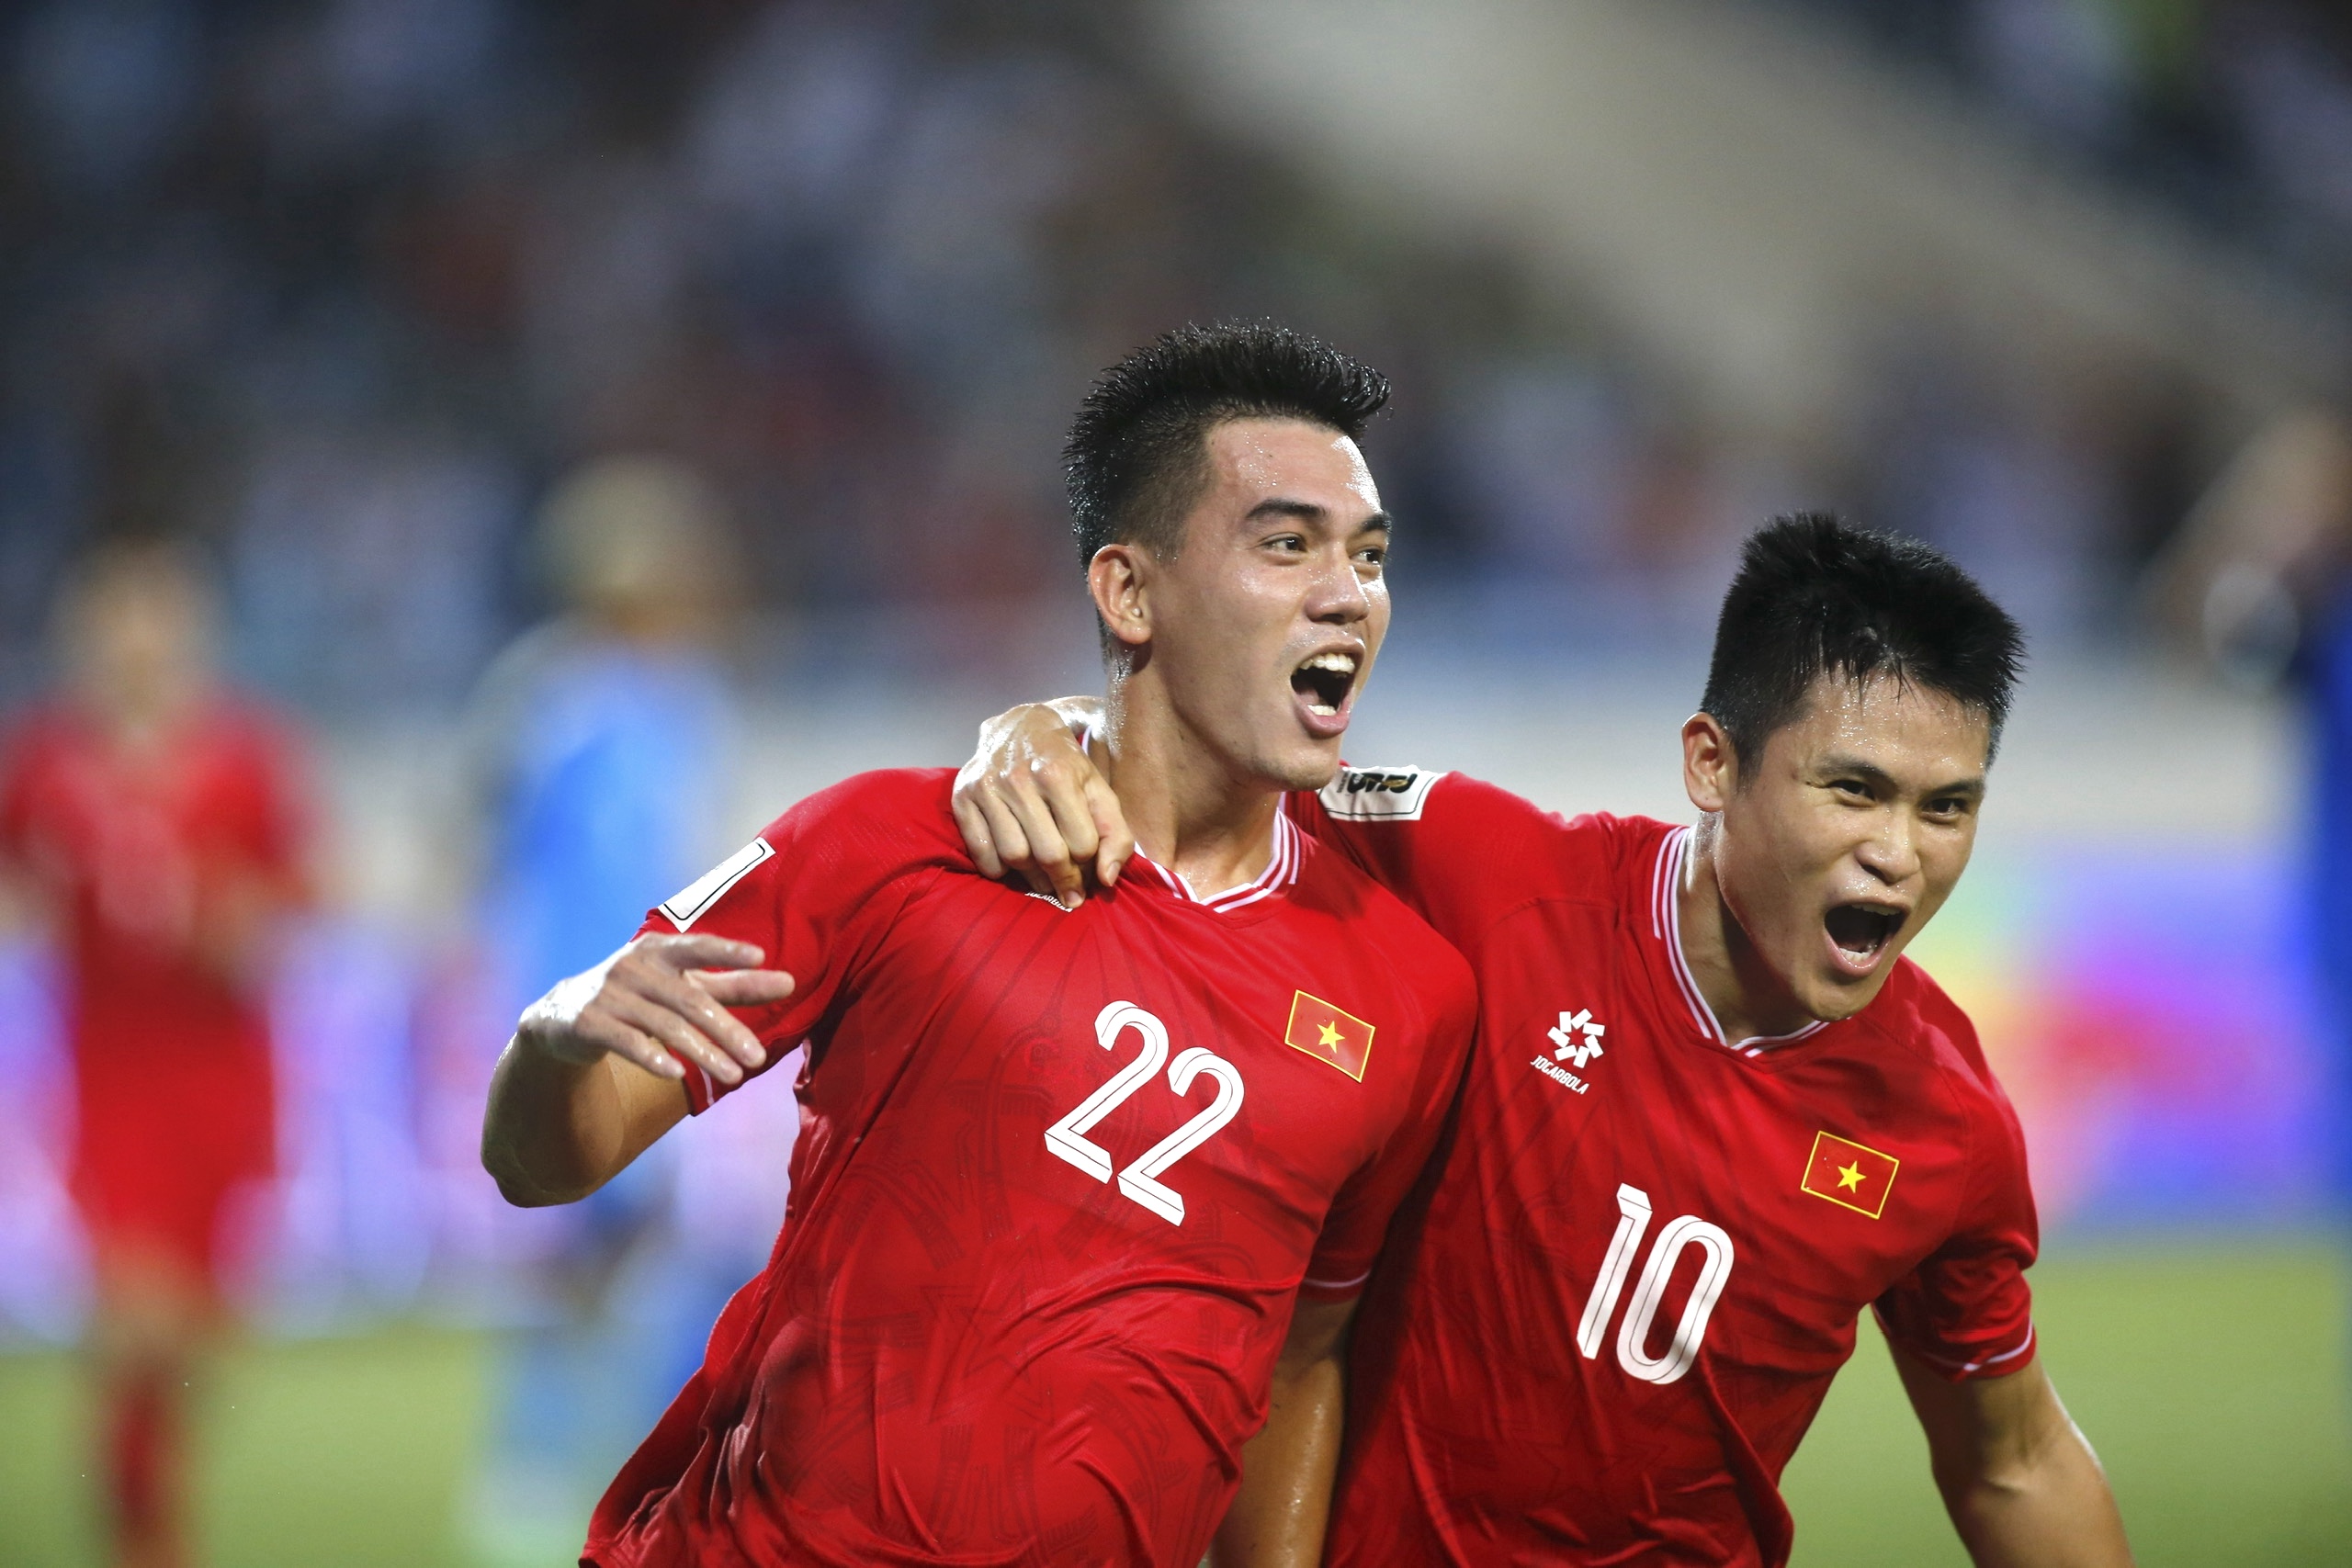 Tiến Linh và Tuấn Hải cùng lập công cho đội tuyển Việt Nam